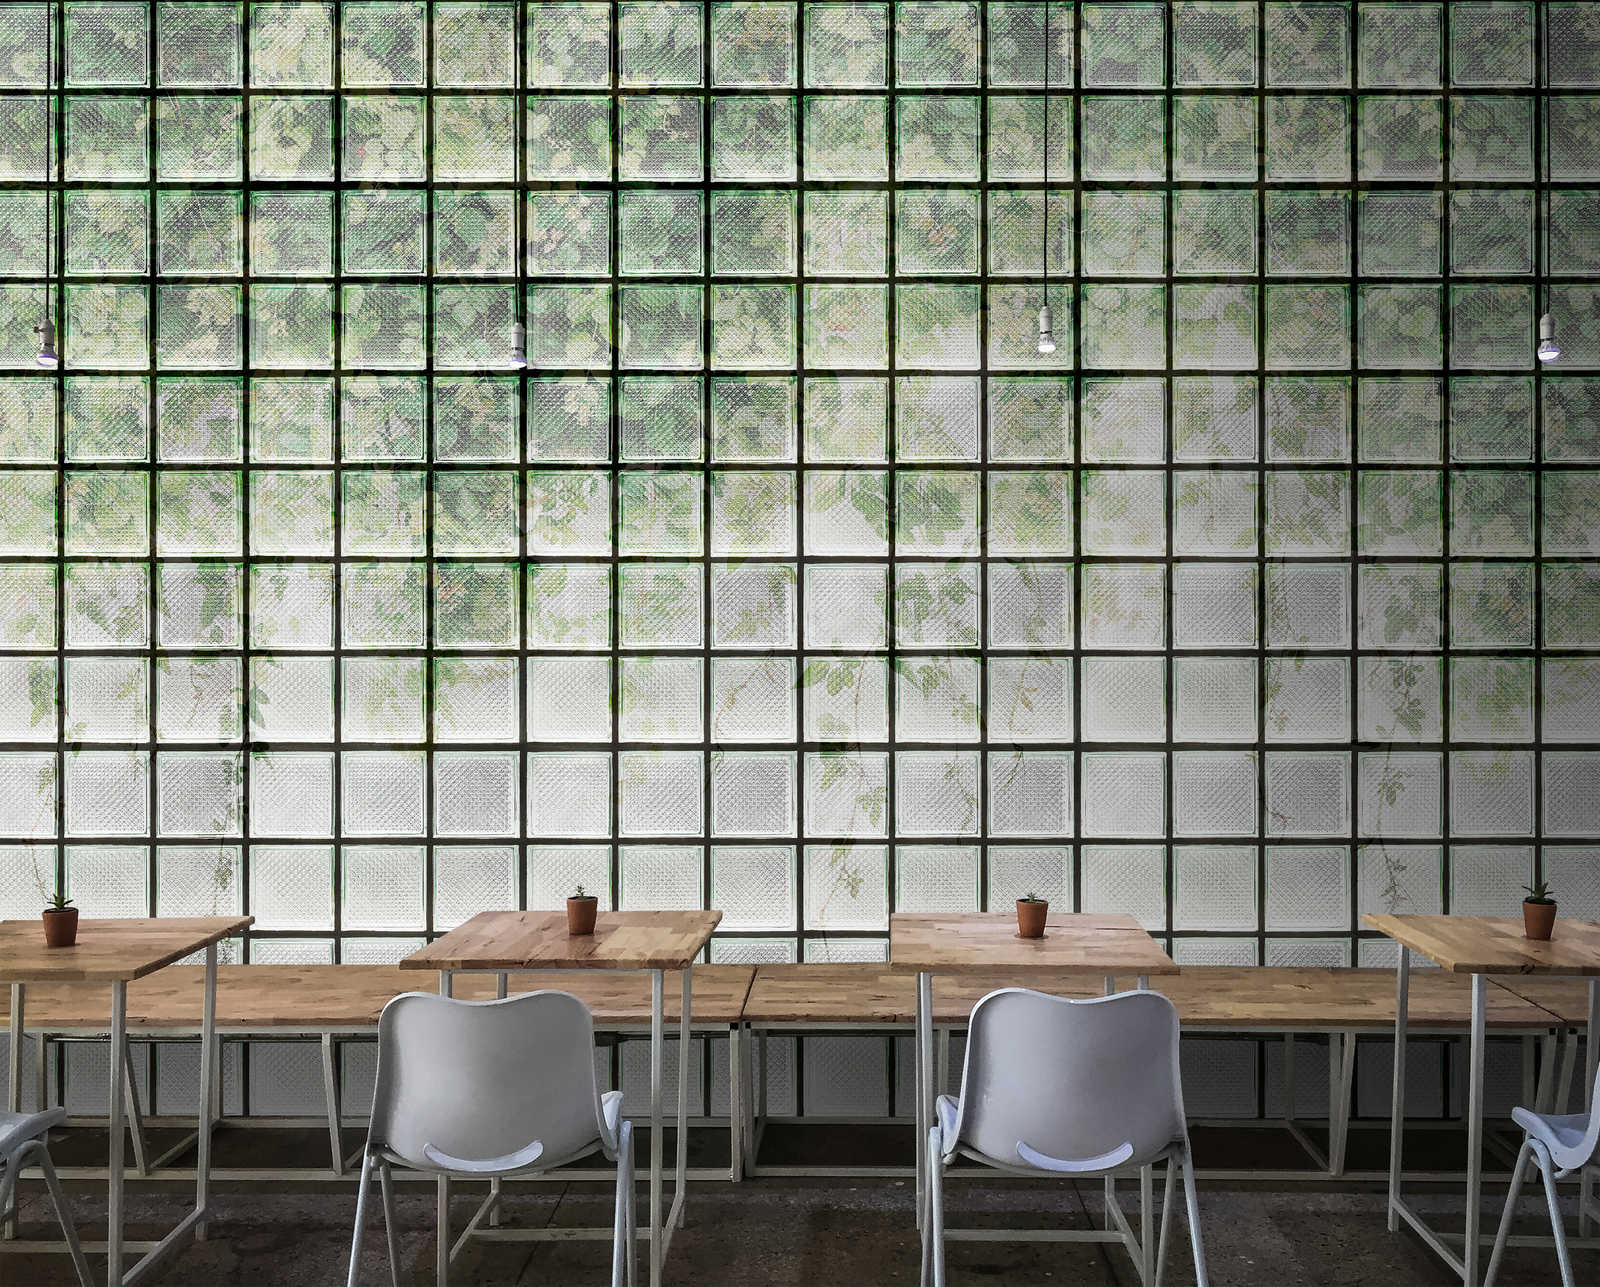             Green House 2 - serre papier peint feuilles & briques de verre
        